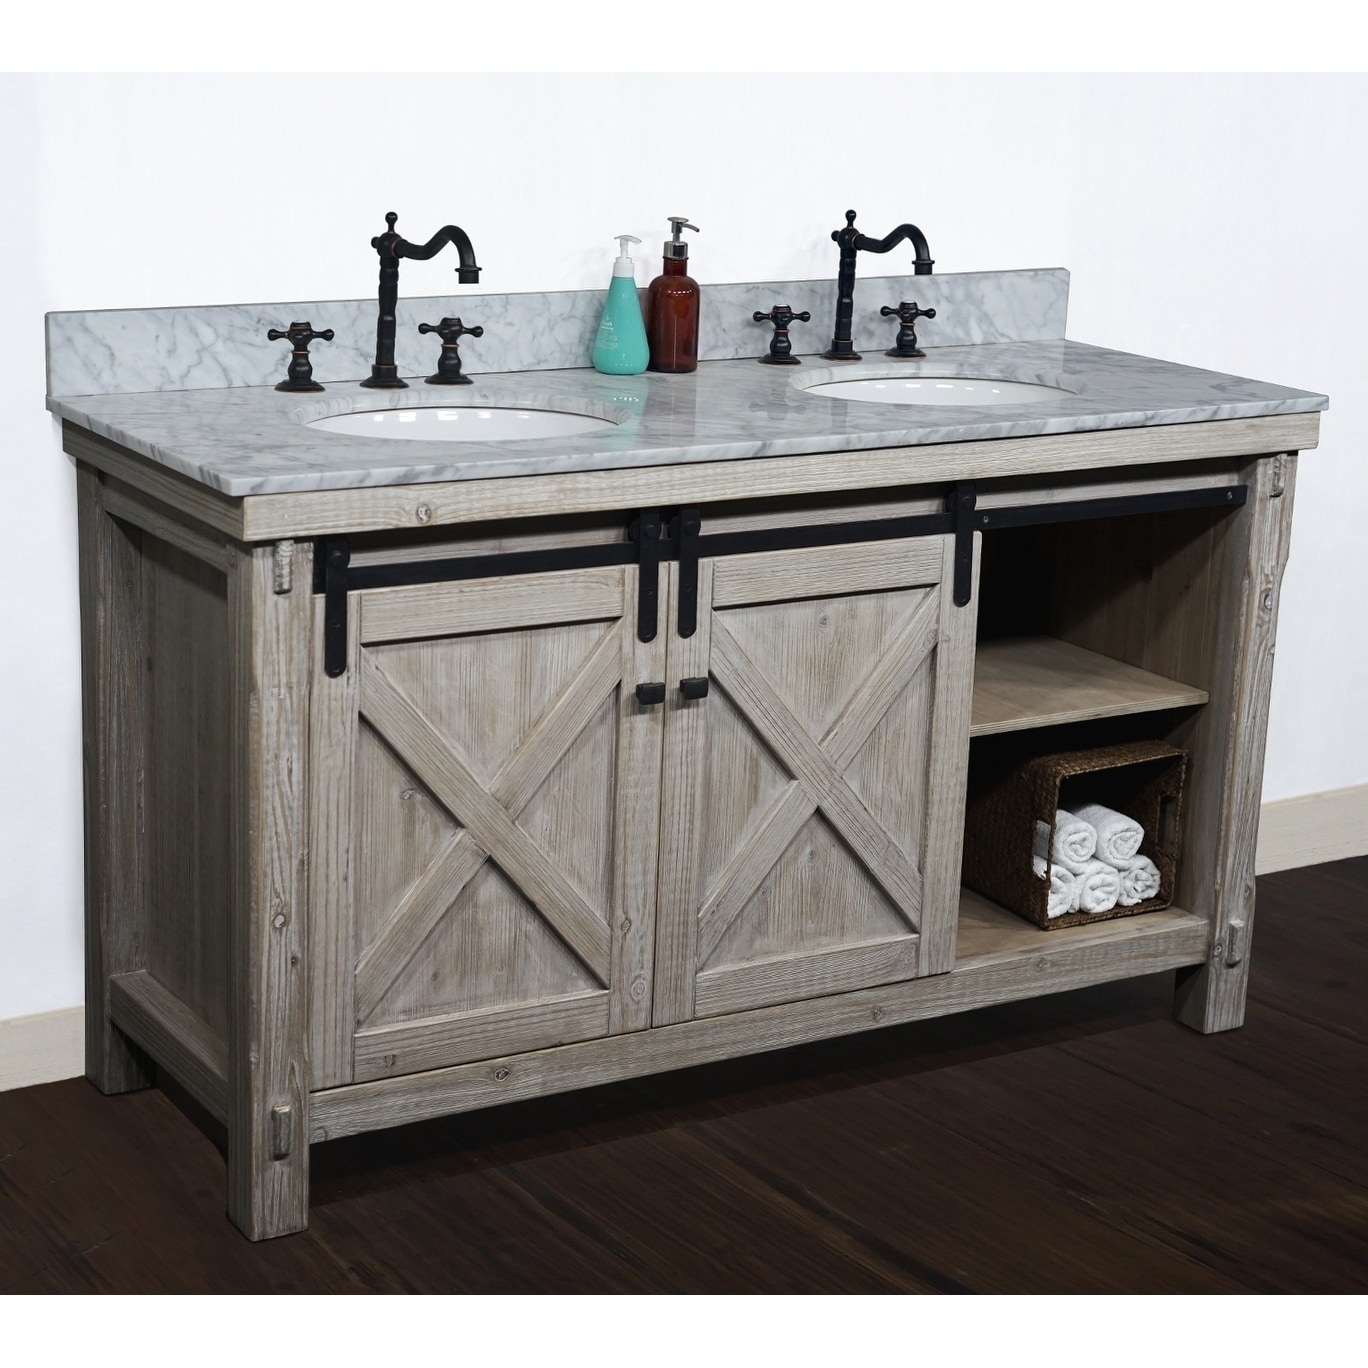 Fir Wood Barn Door Double Sink Vanity With Marble Or Granite Top Overstock 29882471